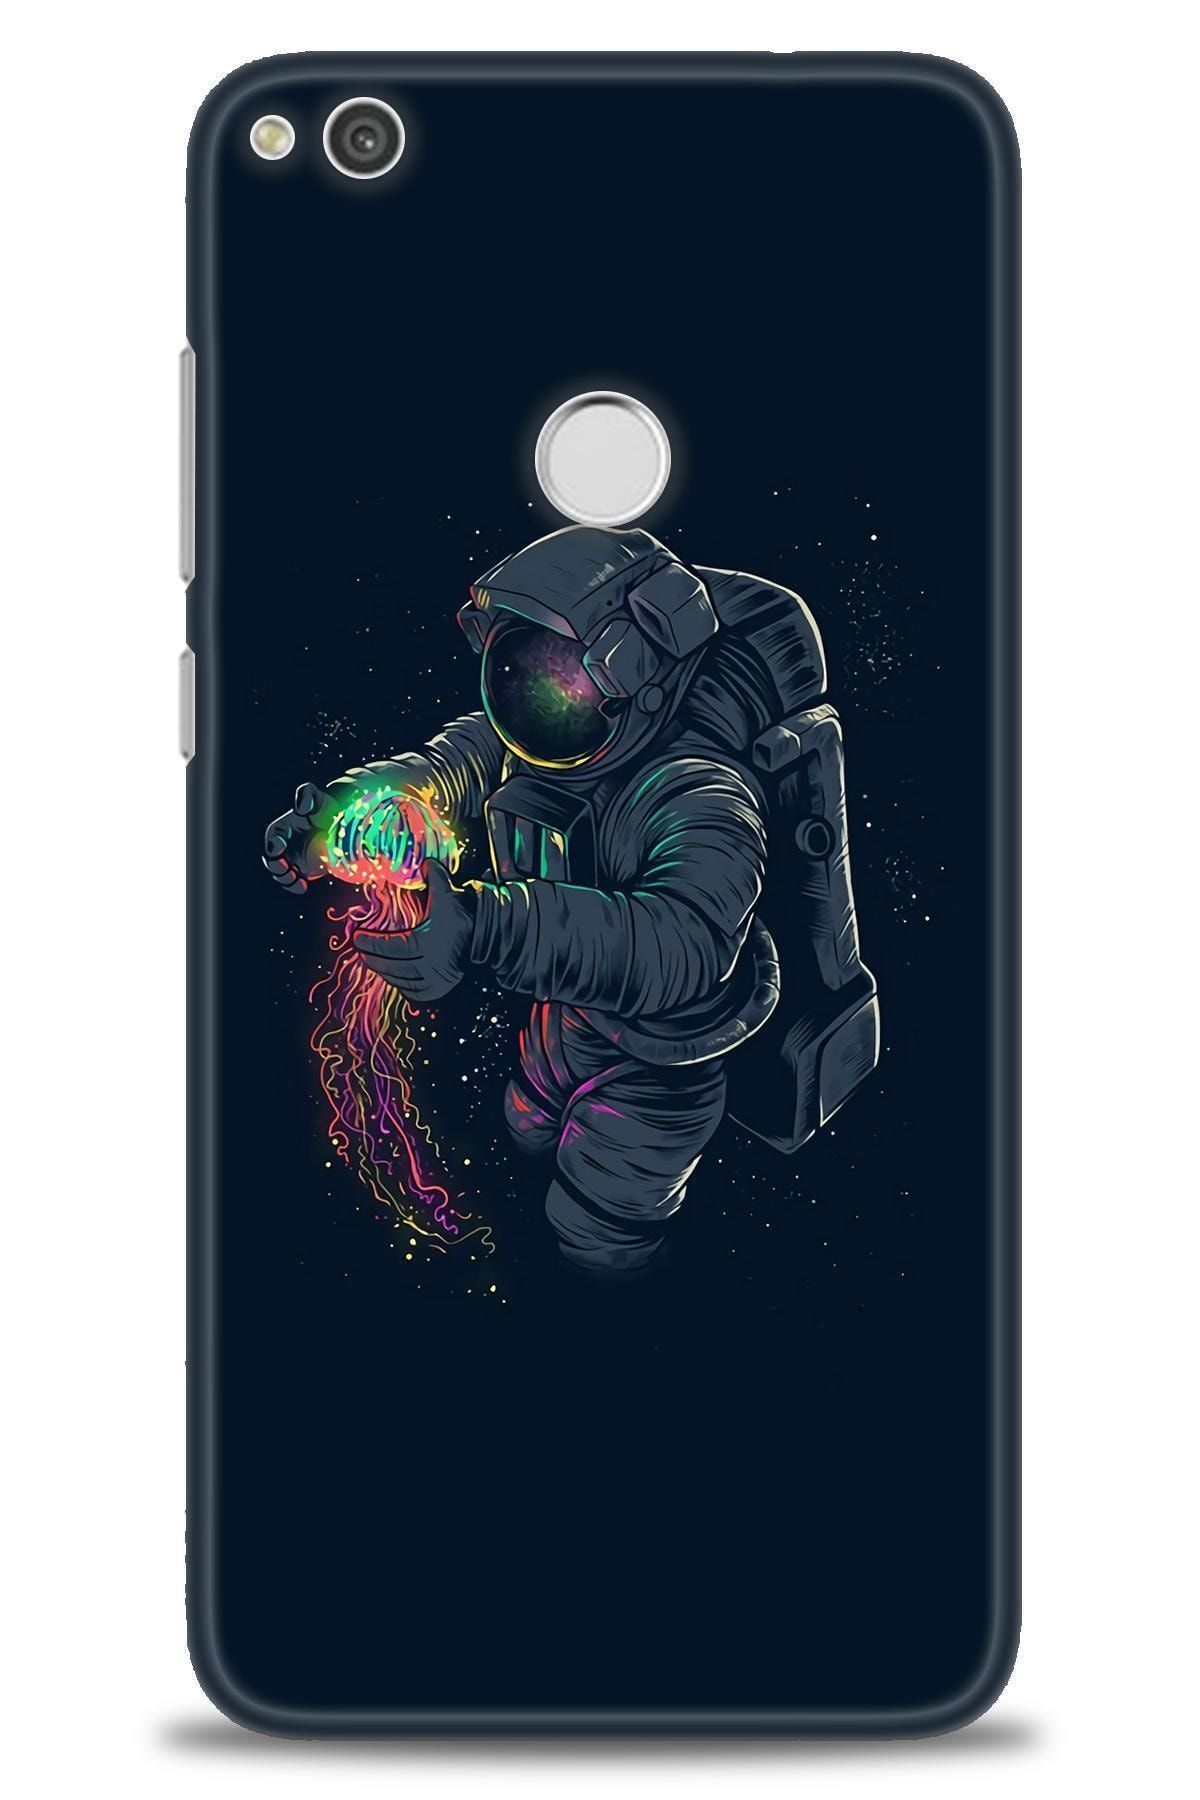 Noprin Huawei P9 Lite 2017 Kılıf Hd Baskılı Kılıf - Astronot Kıyafeti + Temperli Cam